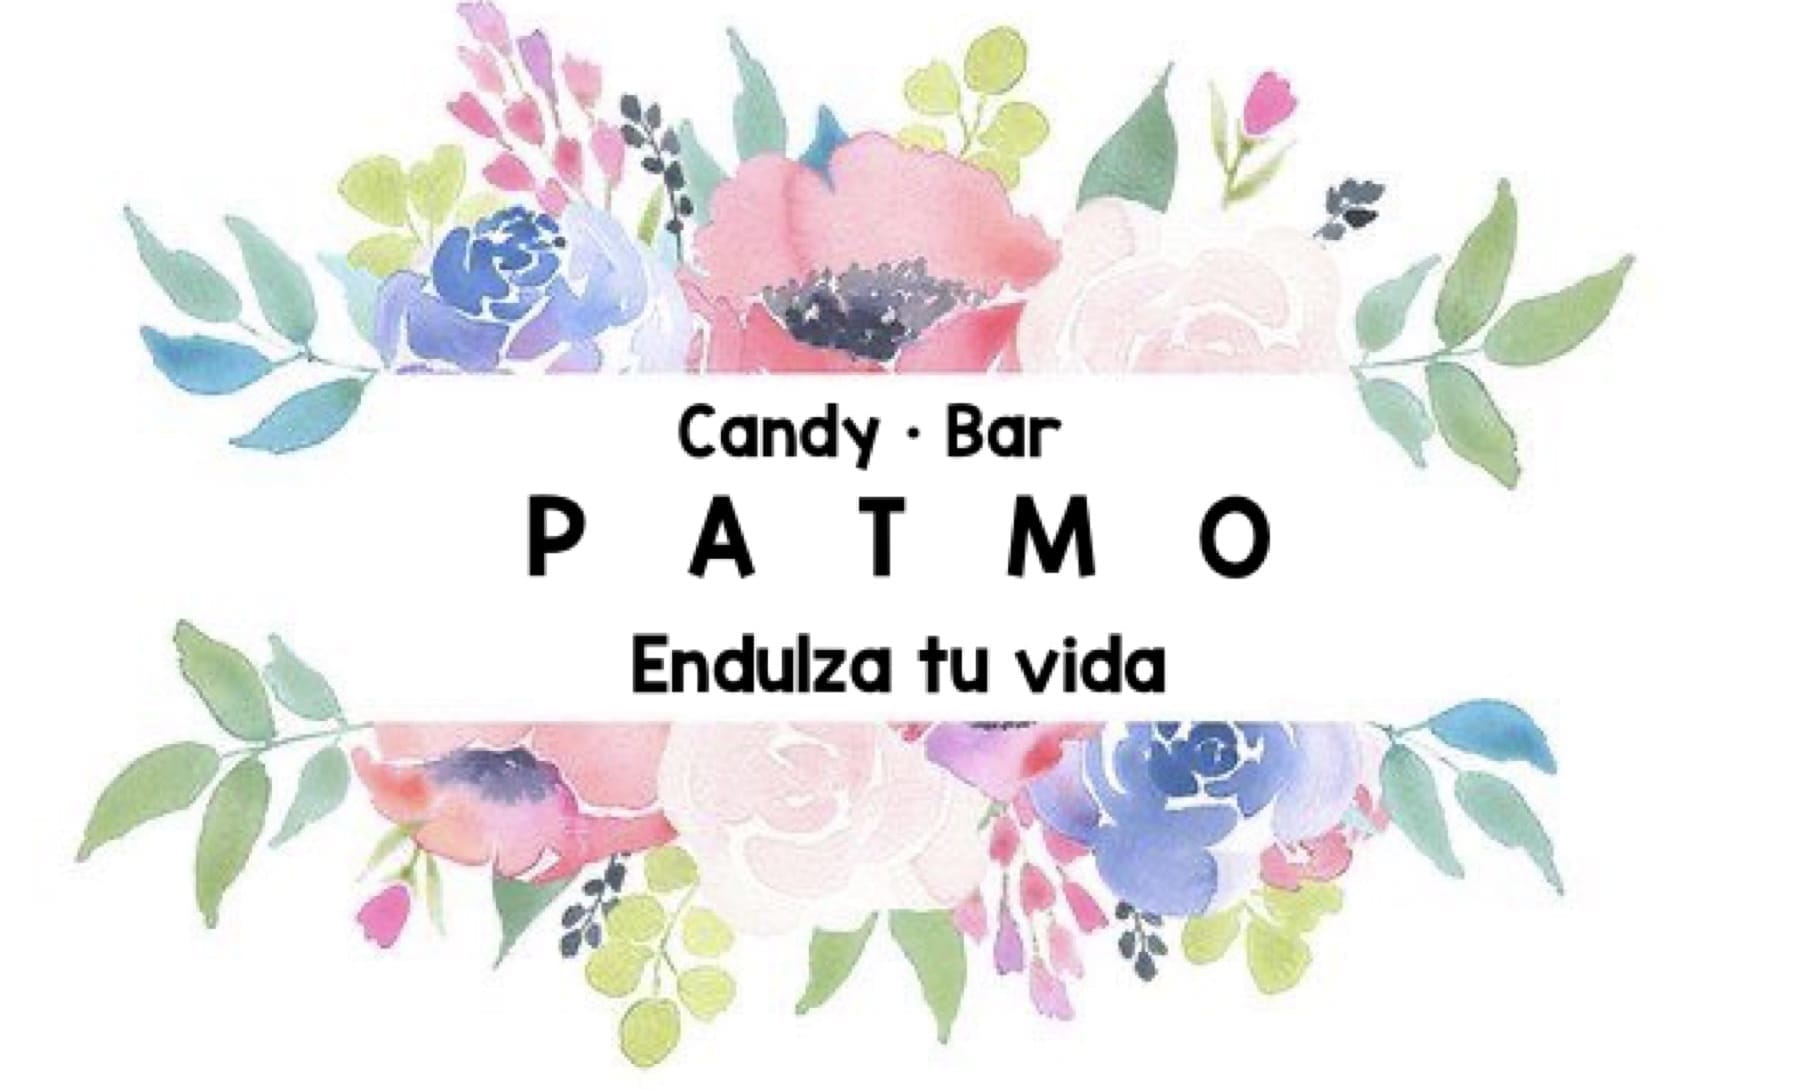 Candy Bar PATMO Endulza tu vida